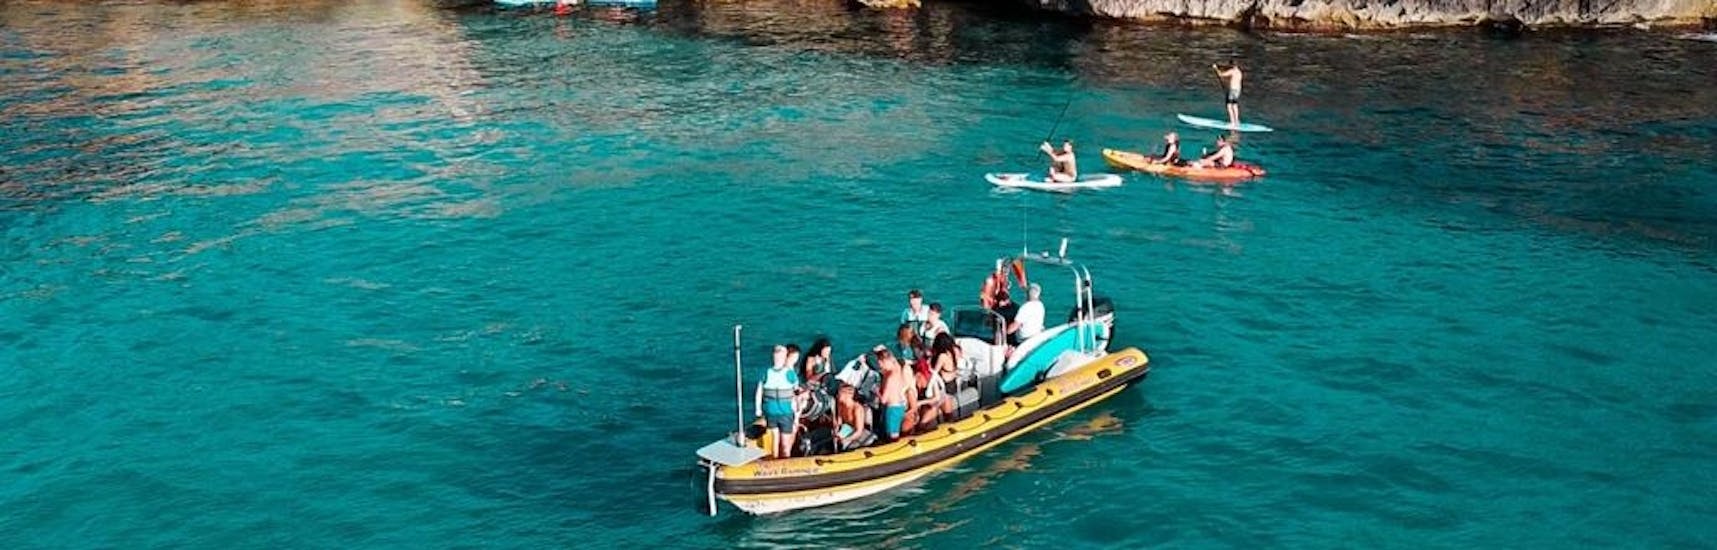 Partecipanti su un motoscafo che si fermano per una nuotata nelle acque turchesi della Baia di Alcudia durante una gita in barca da Can Picafort al parco naturale di Llevant con North Coast Adventure Mallorca.